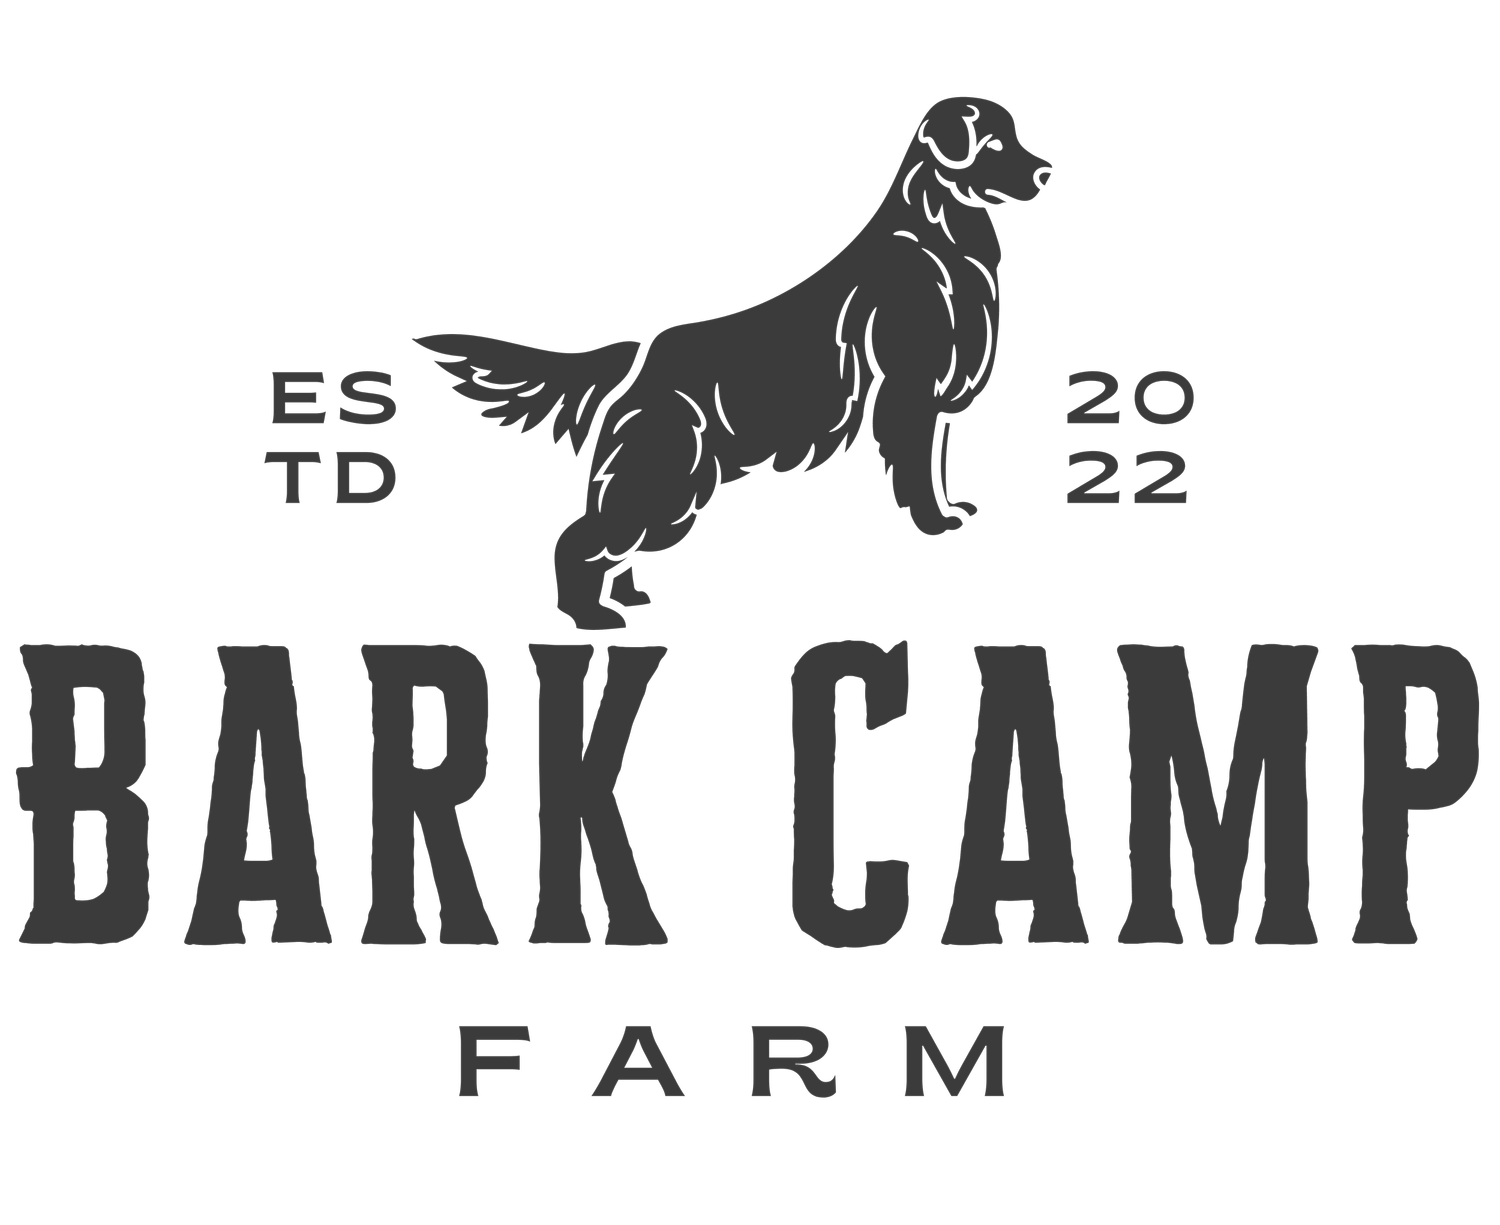 Bark Camp Farm